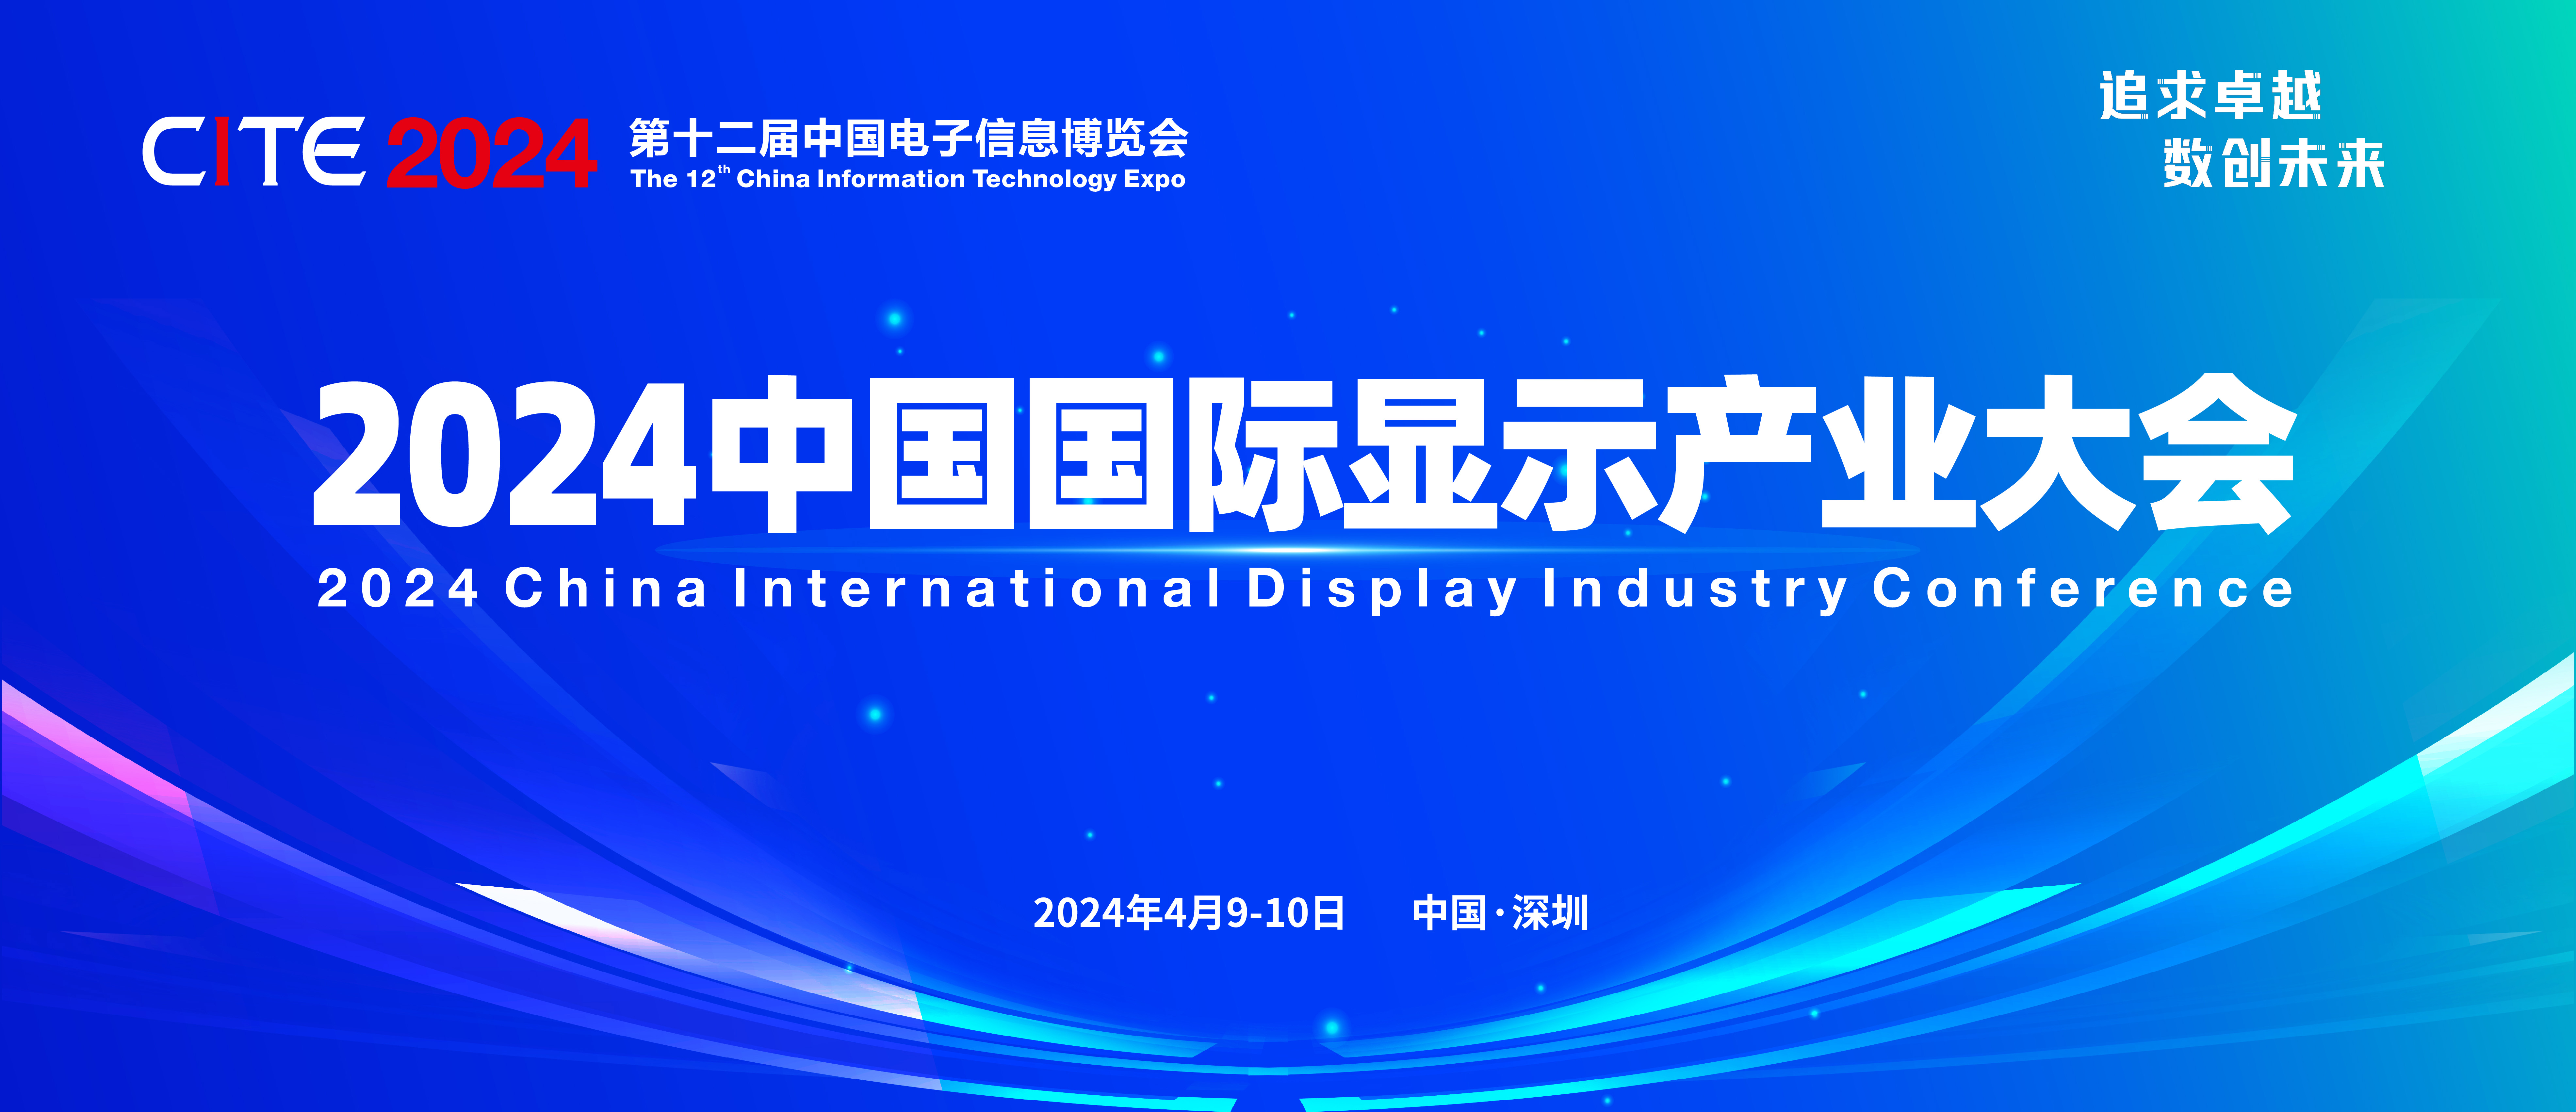 2024中国国际显示产业大会论坛